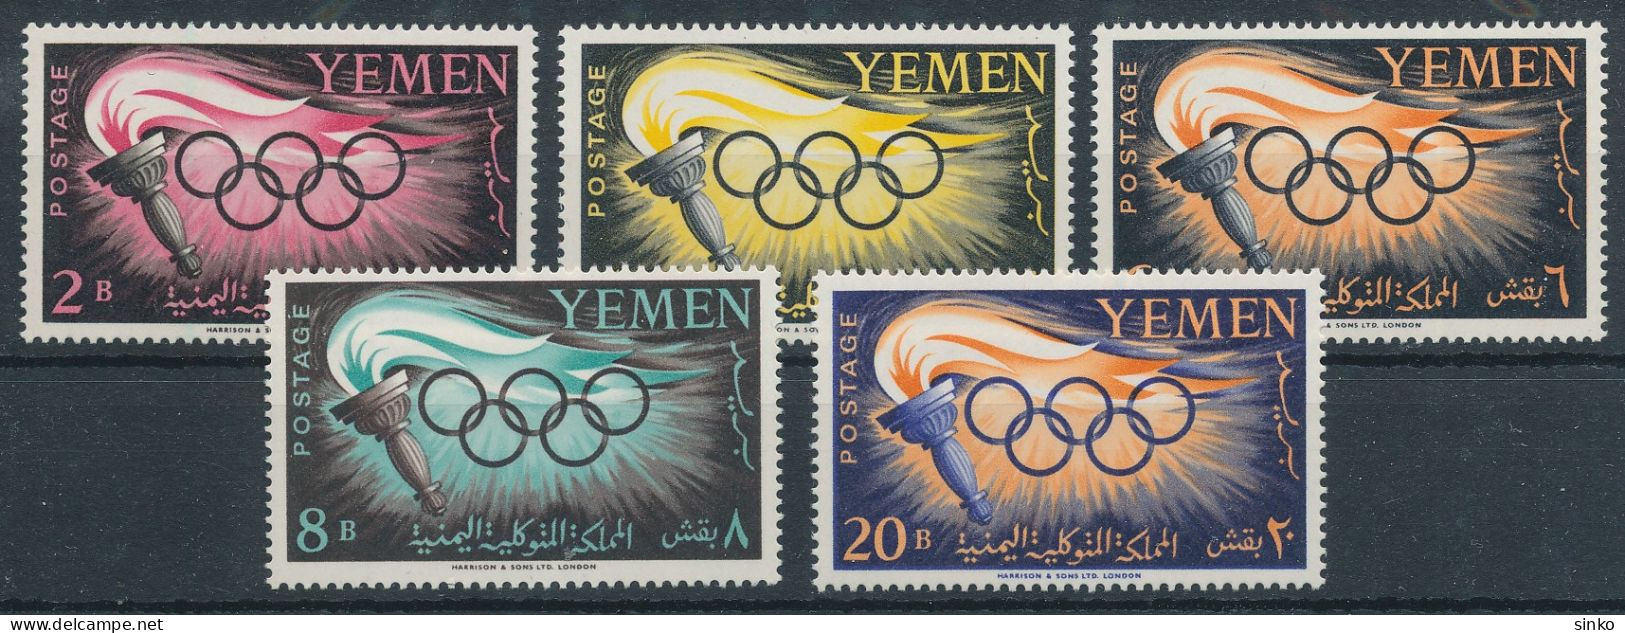 1960. Yemen - Olympics - Zomer 1960: Rome